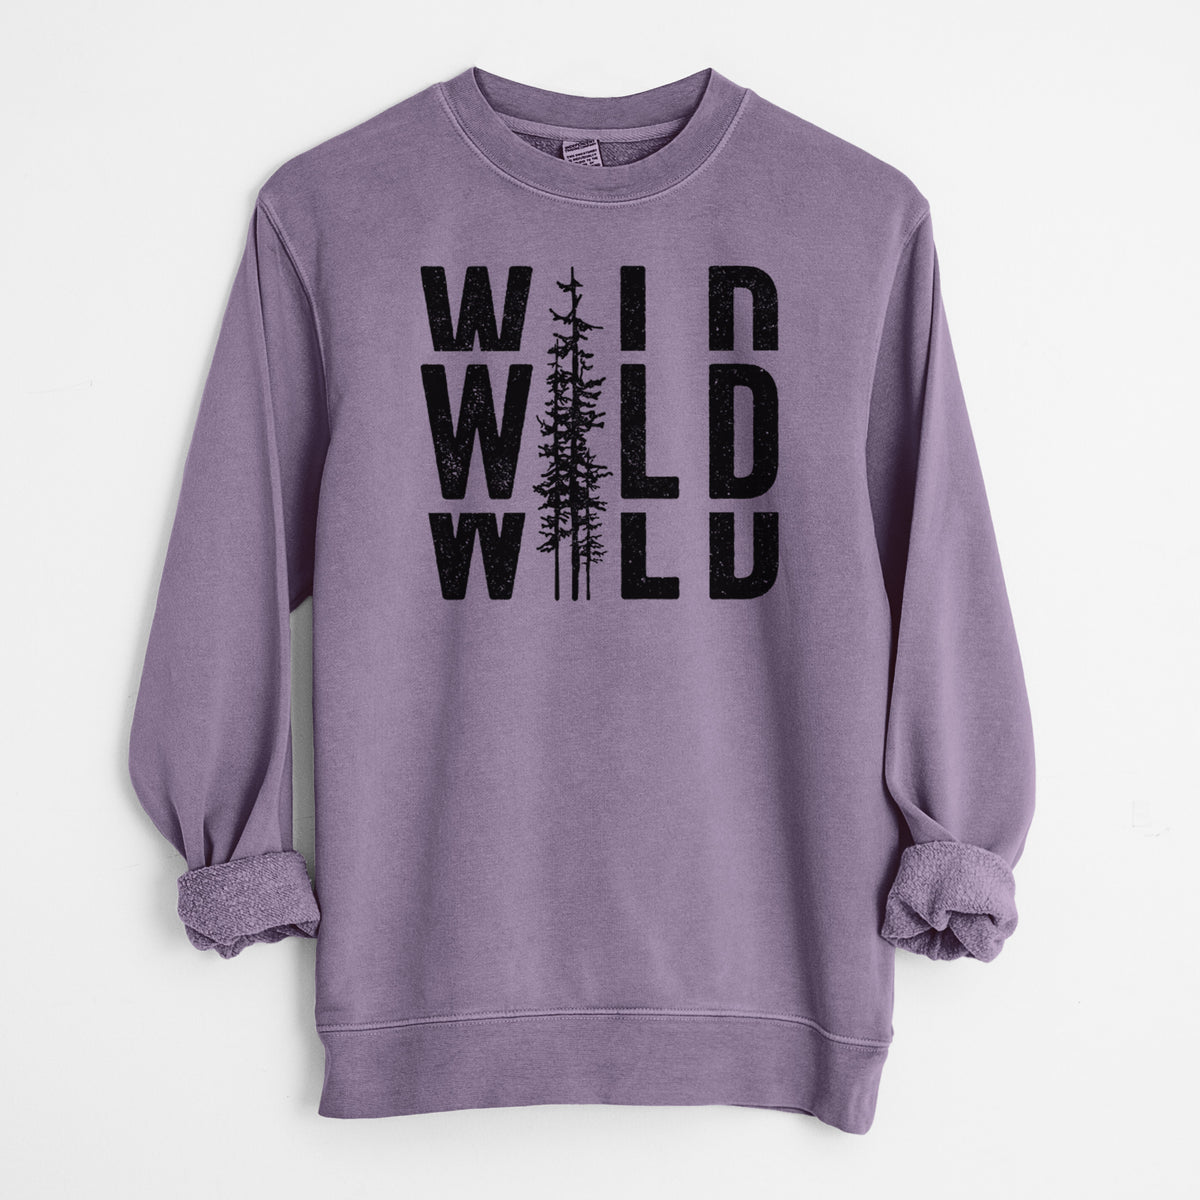 Wild - Unisex Pigment Dyed Crew Sweatshirt